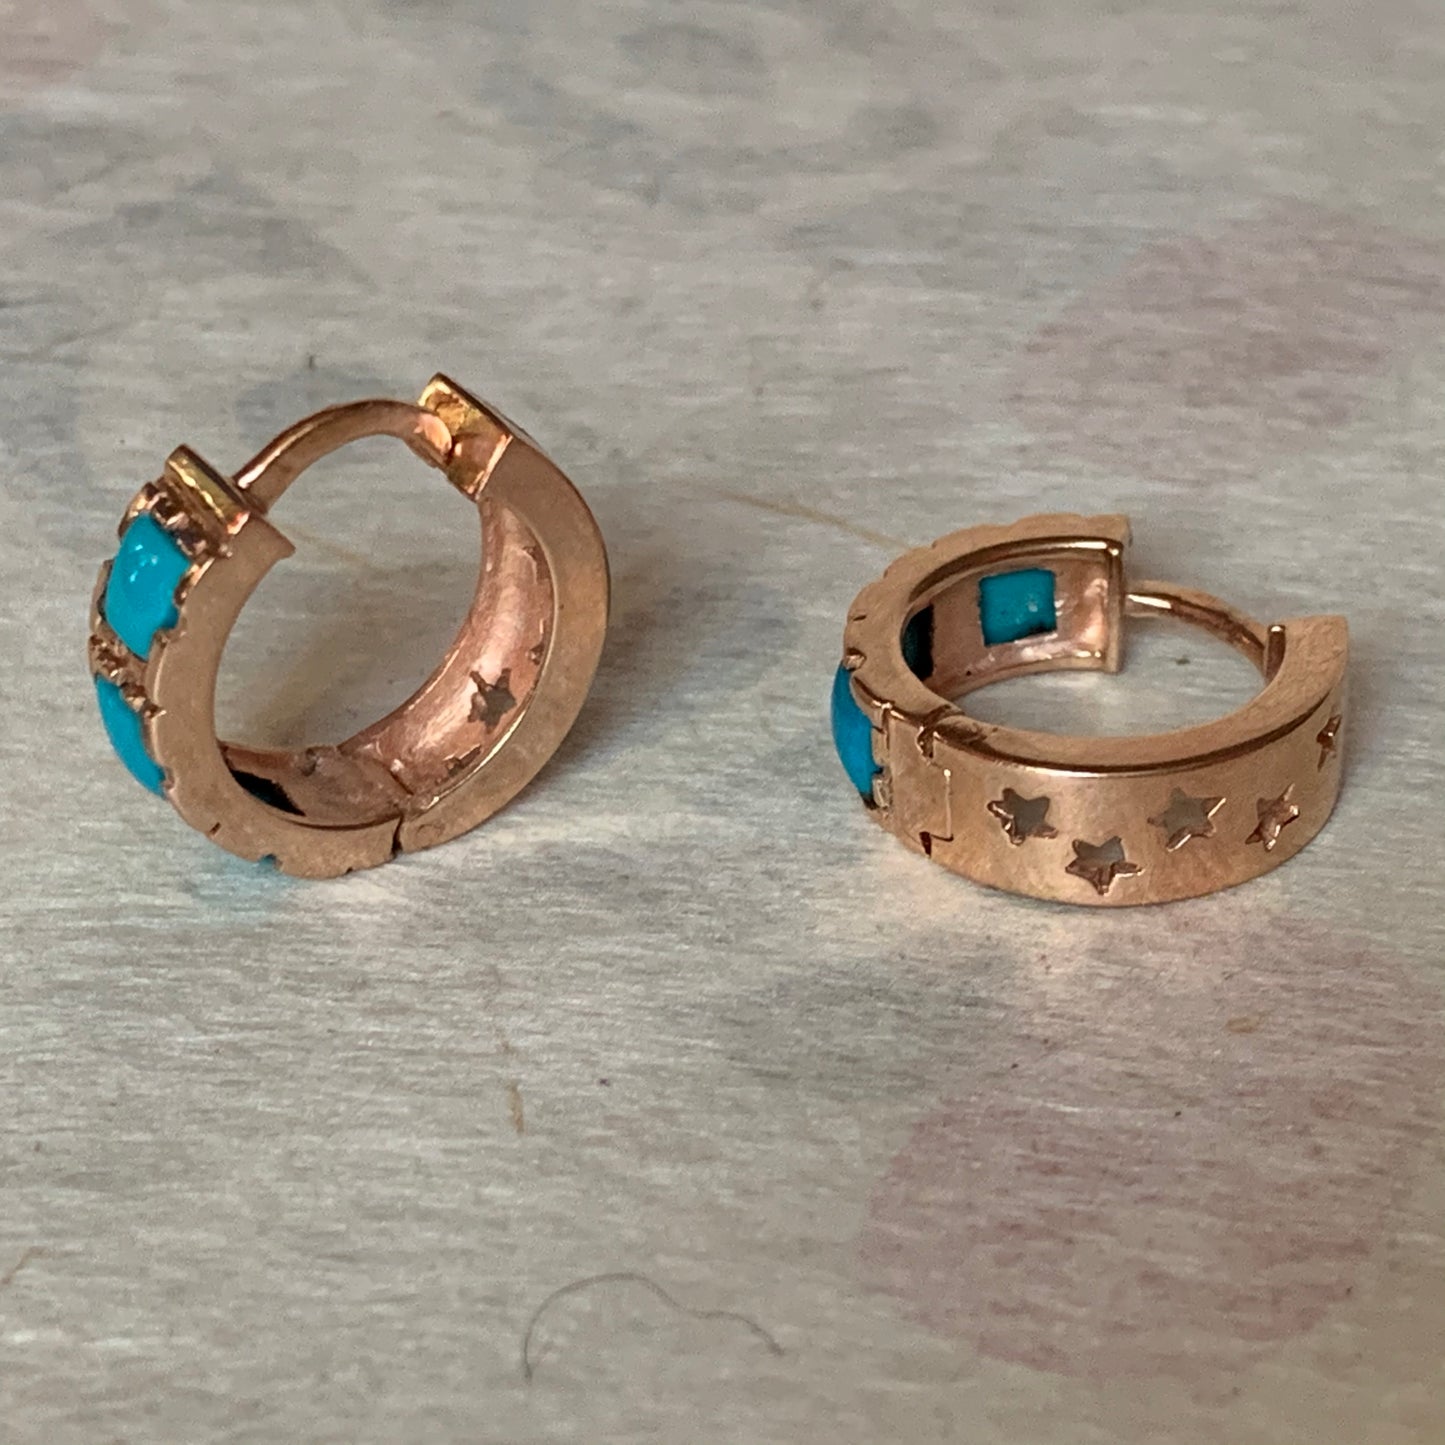 A pair of turquoise hoop earrings